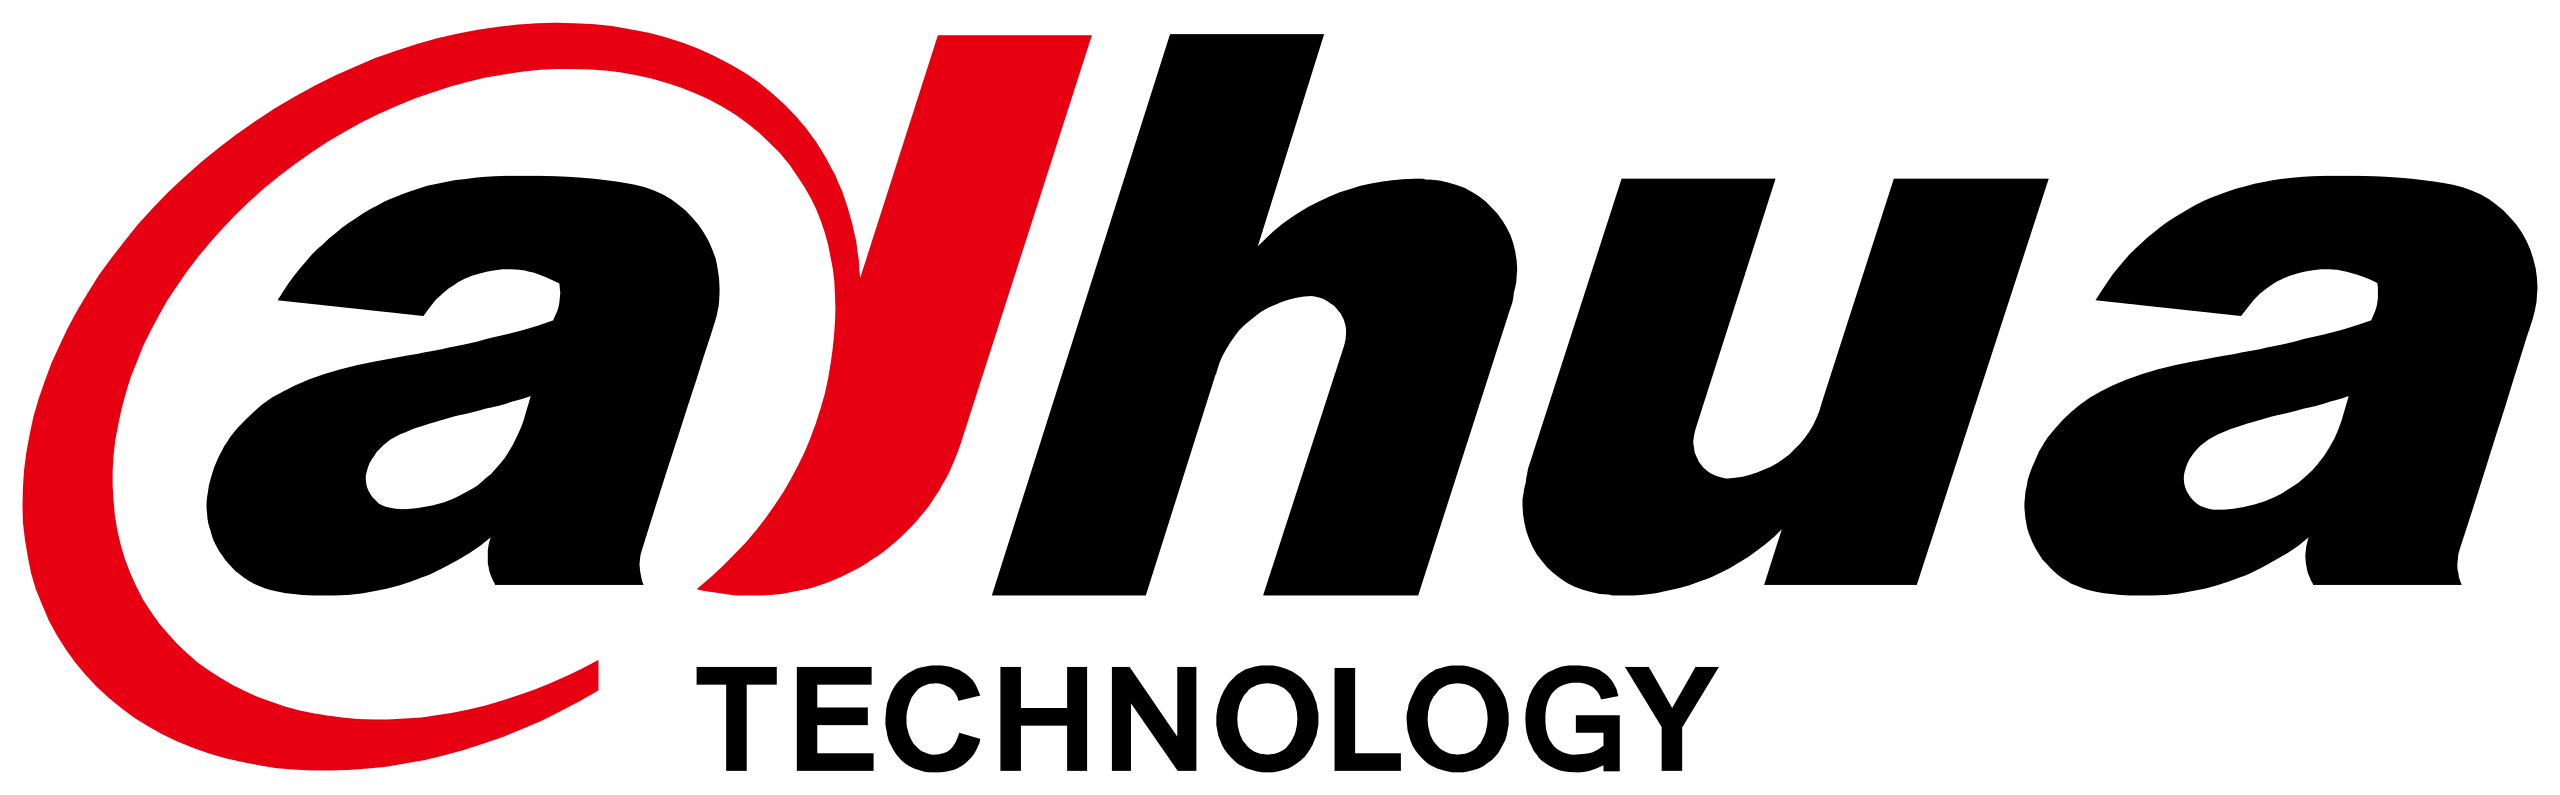 File:Dahua Technology logo.svg - Wikimedia Commons